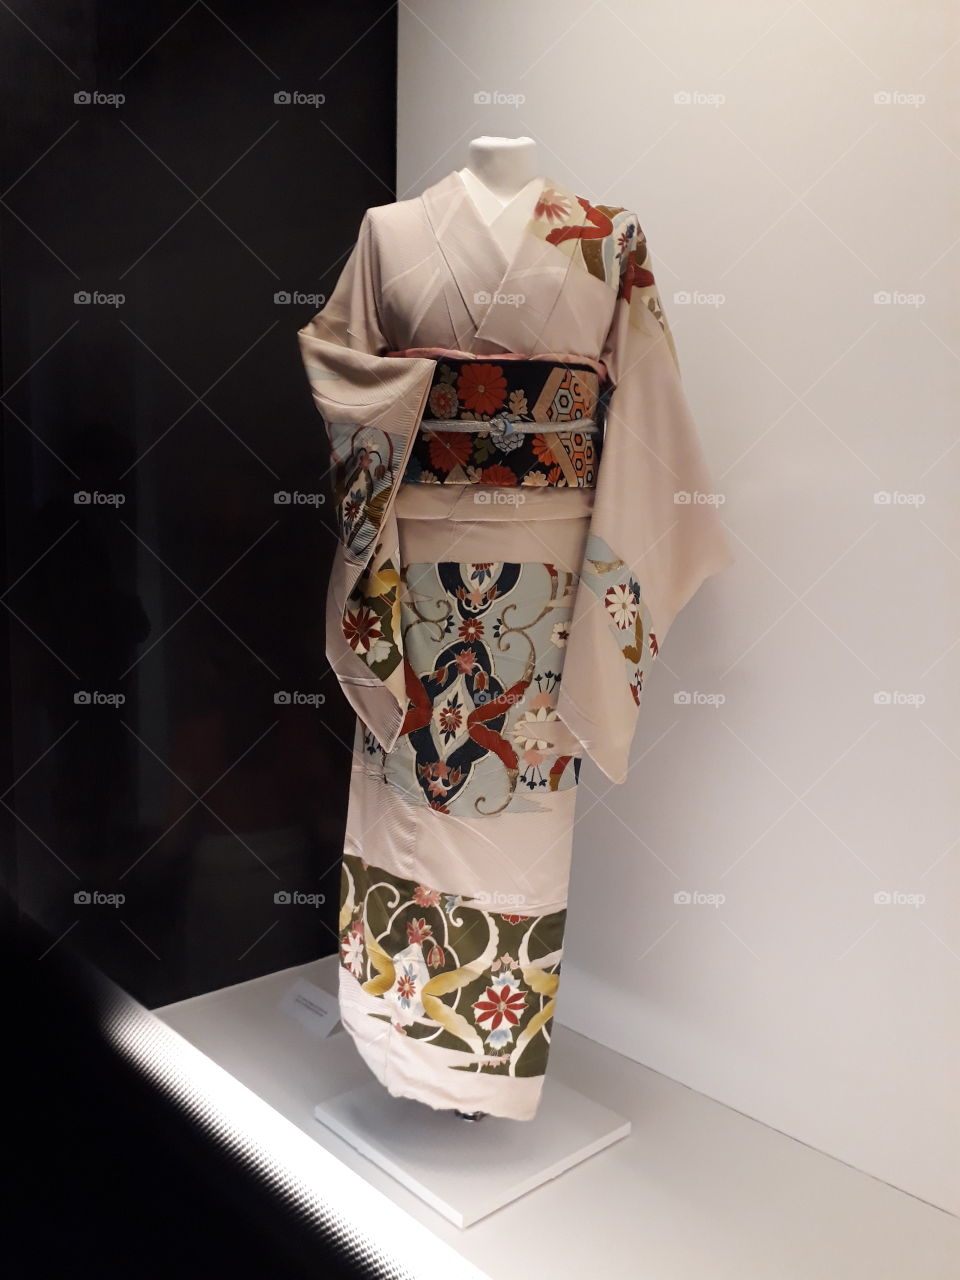 white kimono